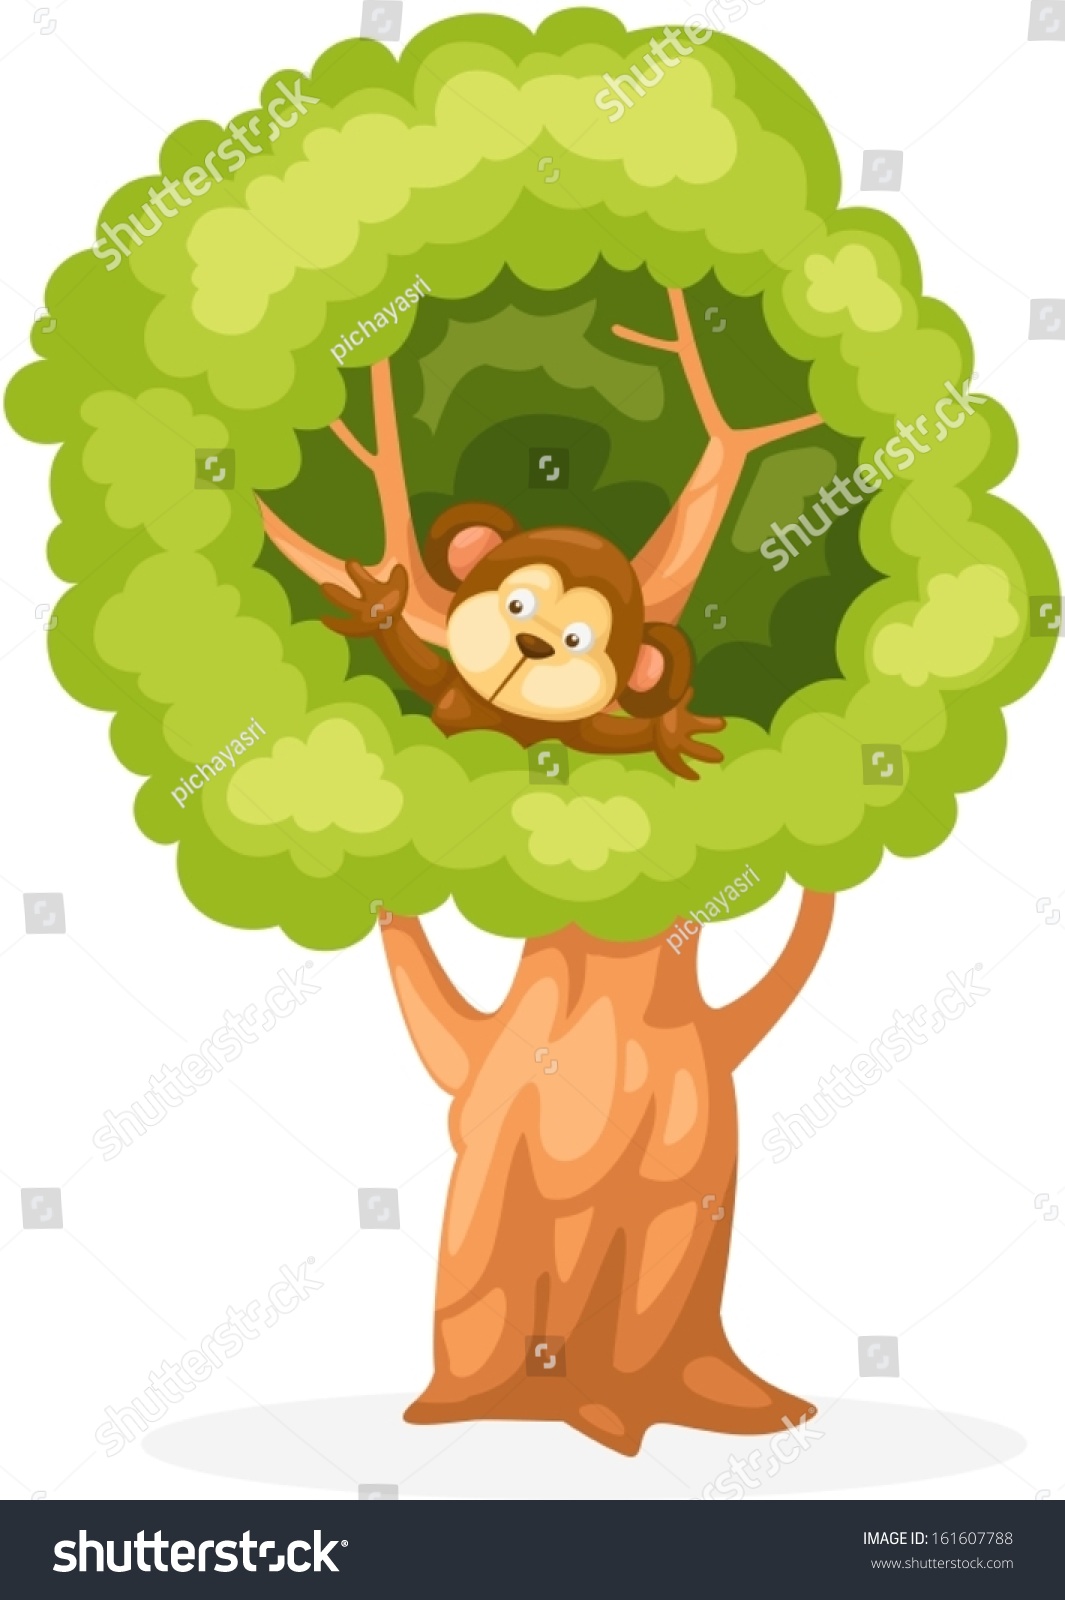 Illustration Isolated Cartoon Monkey On Tree Stock Vector 161607788